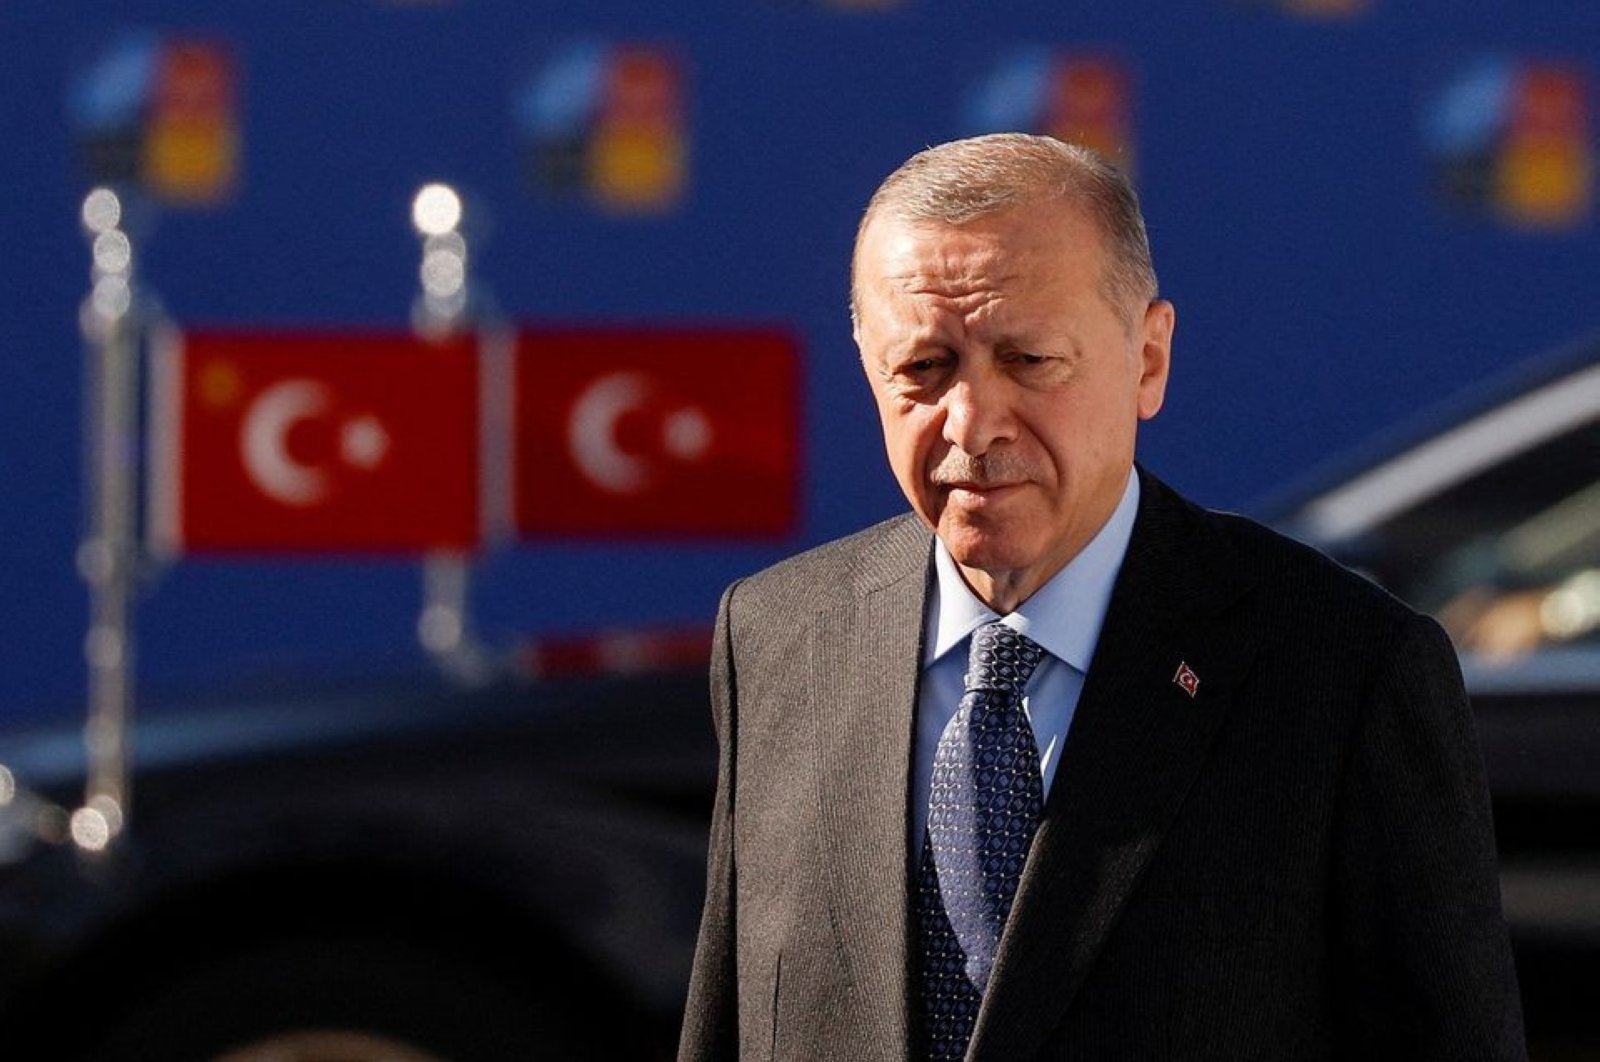 Langkah mendatang Türkiye di tengah perubahan wilayah, risiko geopolitik